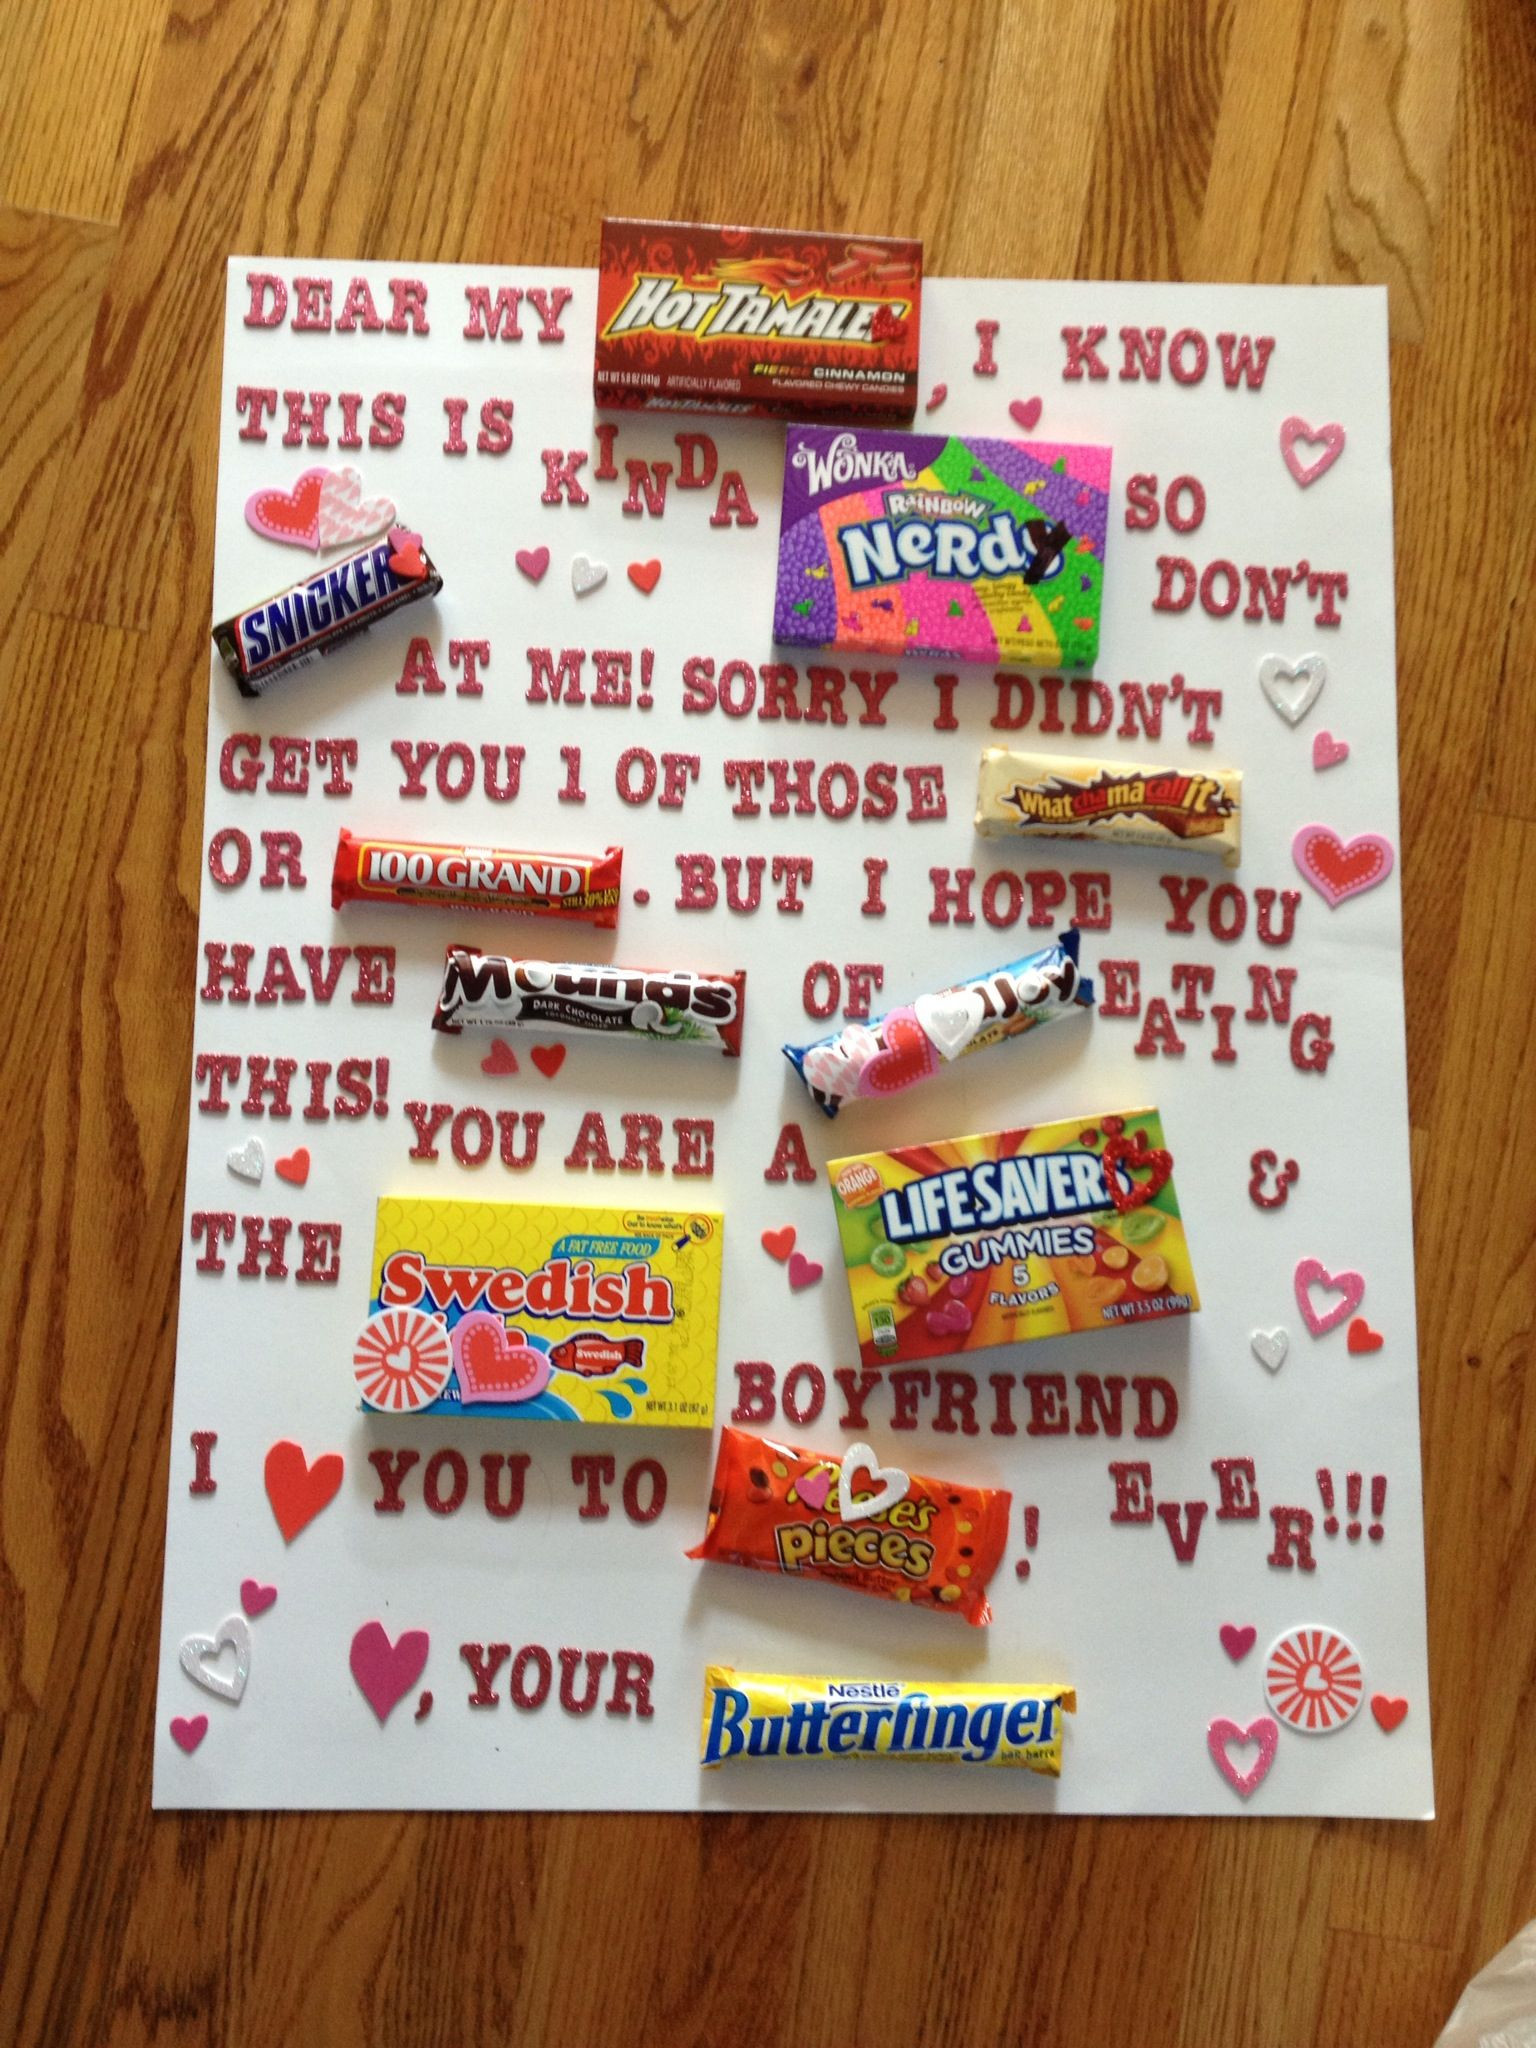 Cute Valentines Day Gift Ideas Boyfriend
 What I made my boyfriend for Valentines day